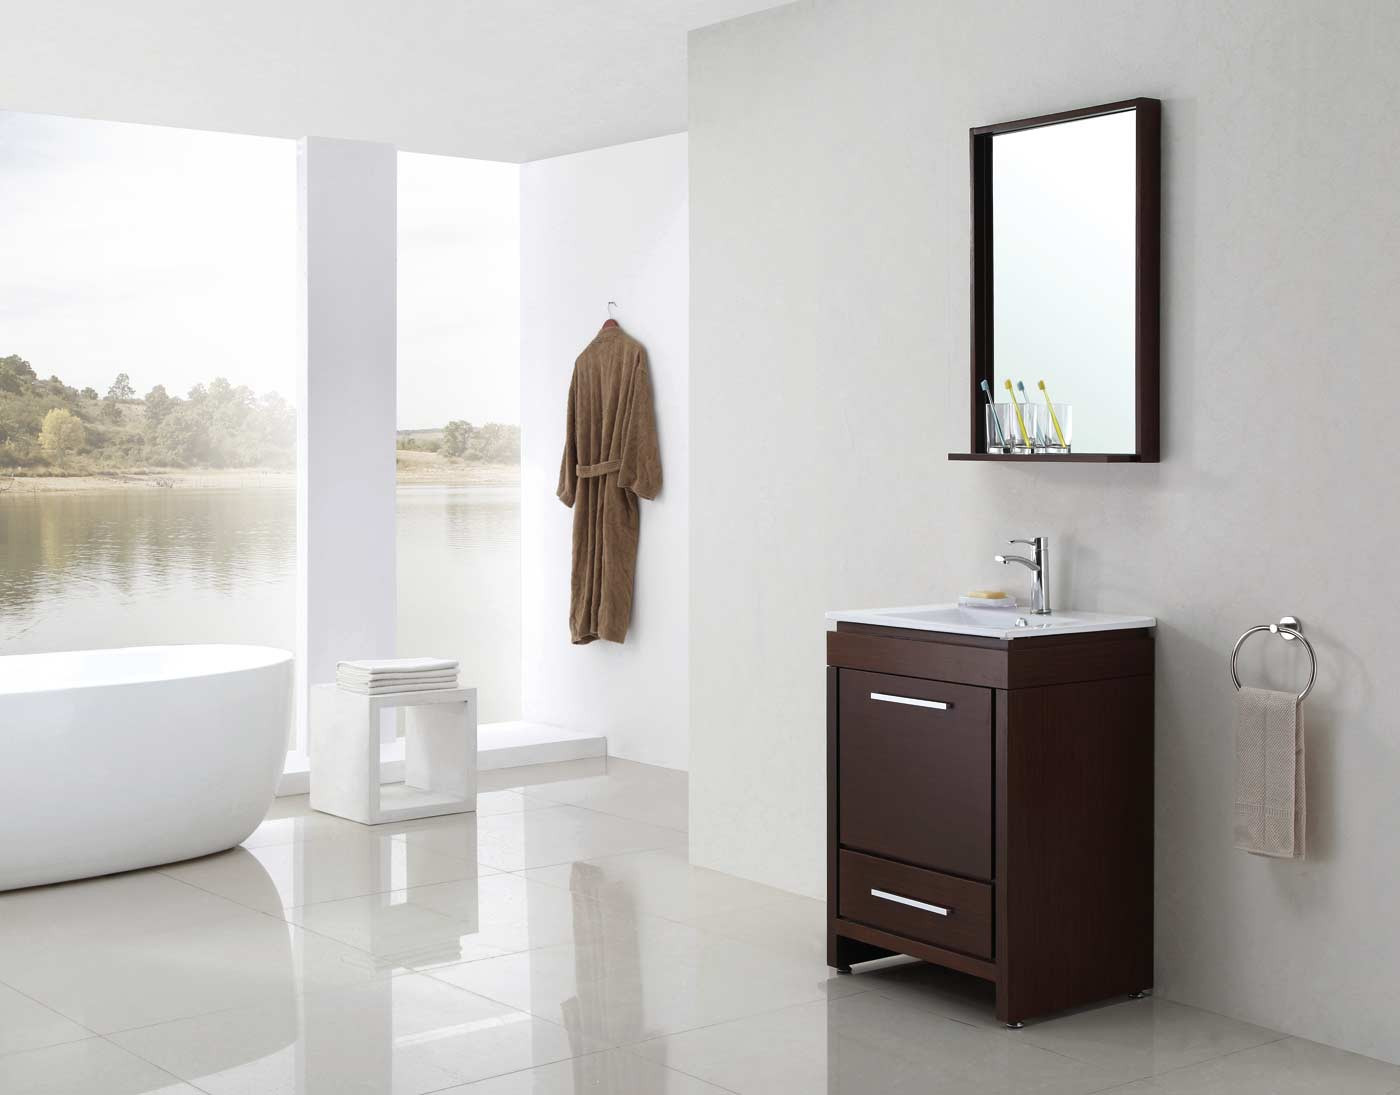 Bathroom Vanity With Mirror
 Buy Parma 24 In Single Bathroom Vanity Mirror Set in Iron